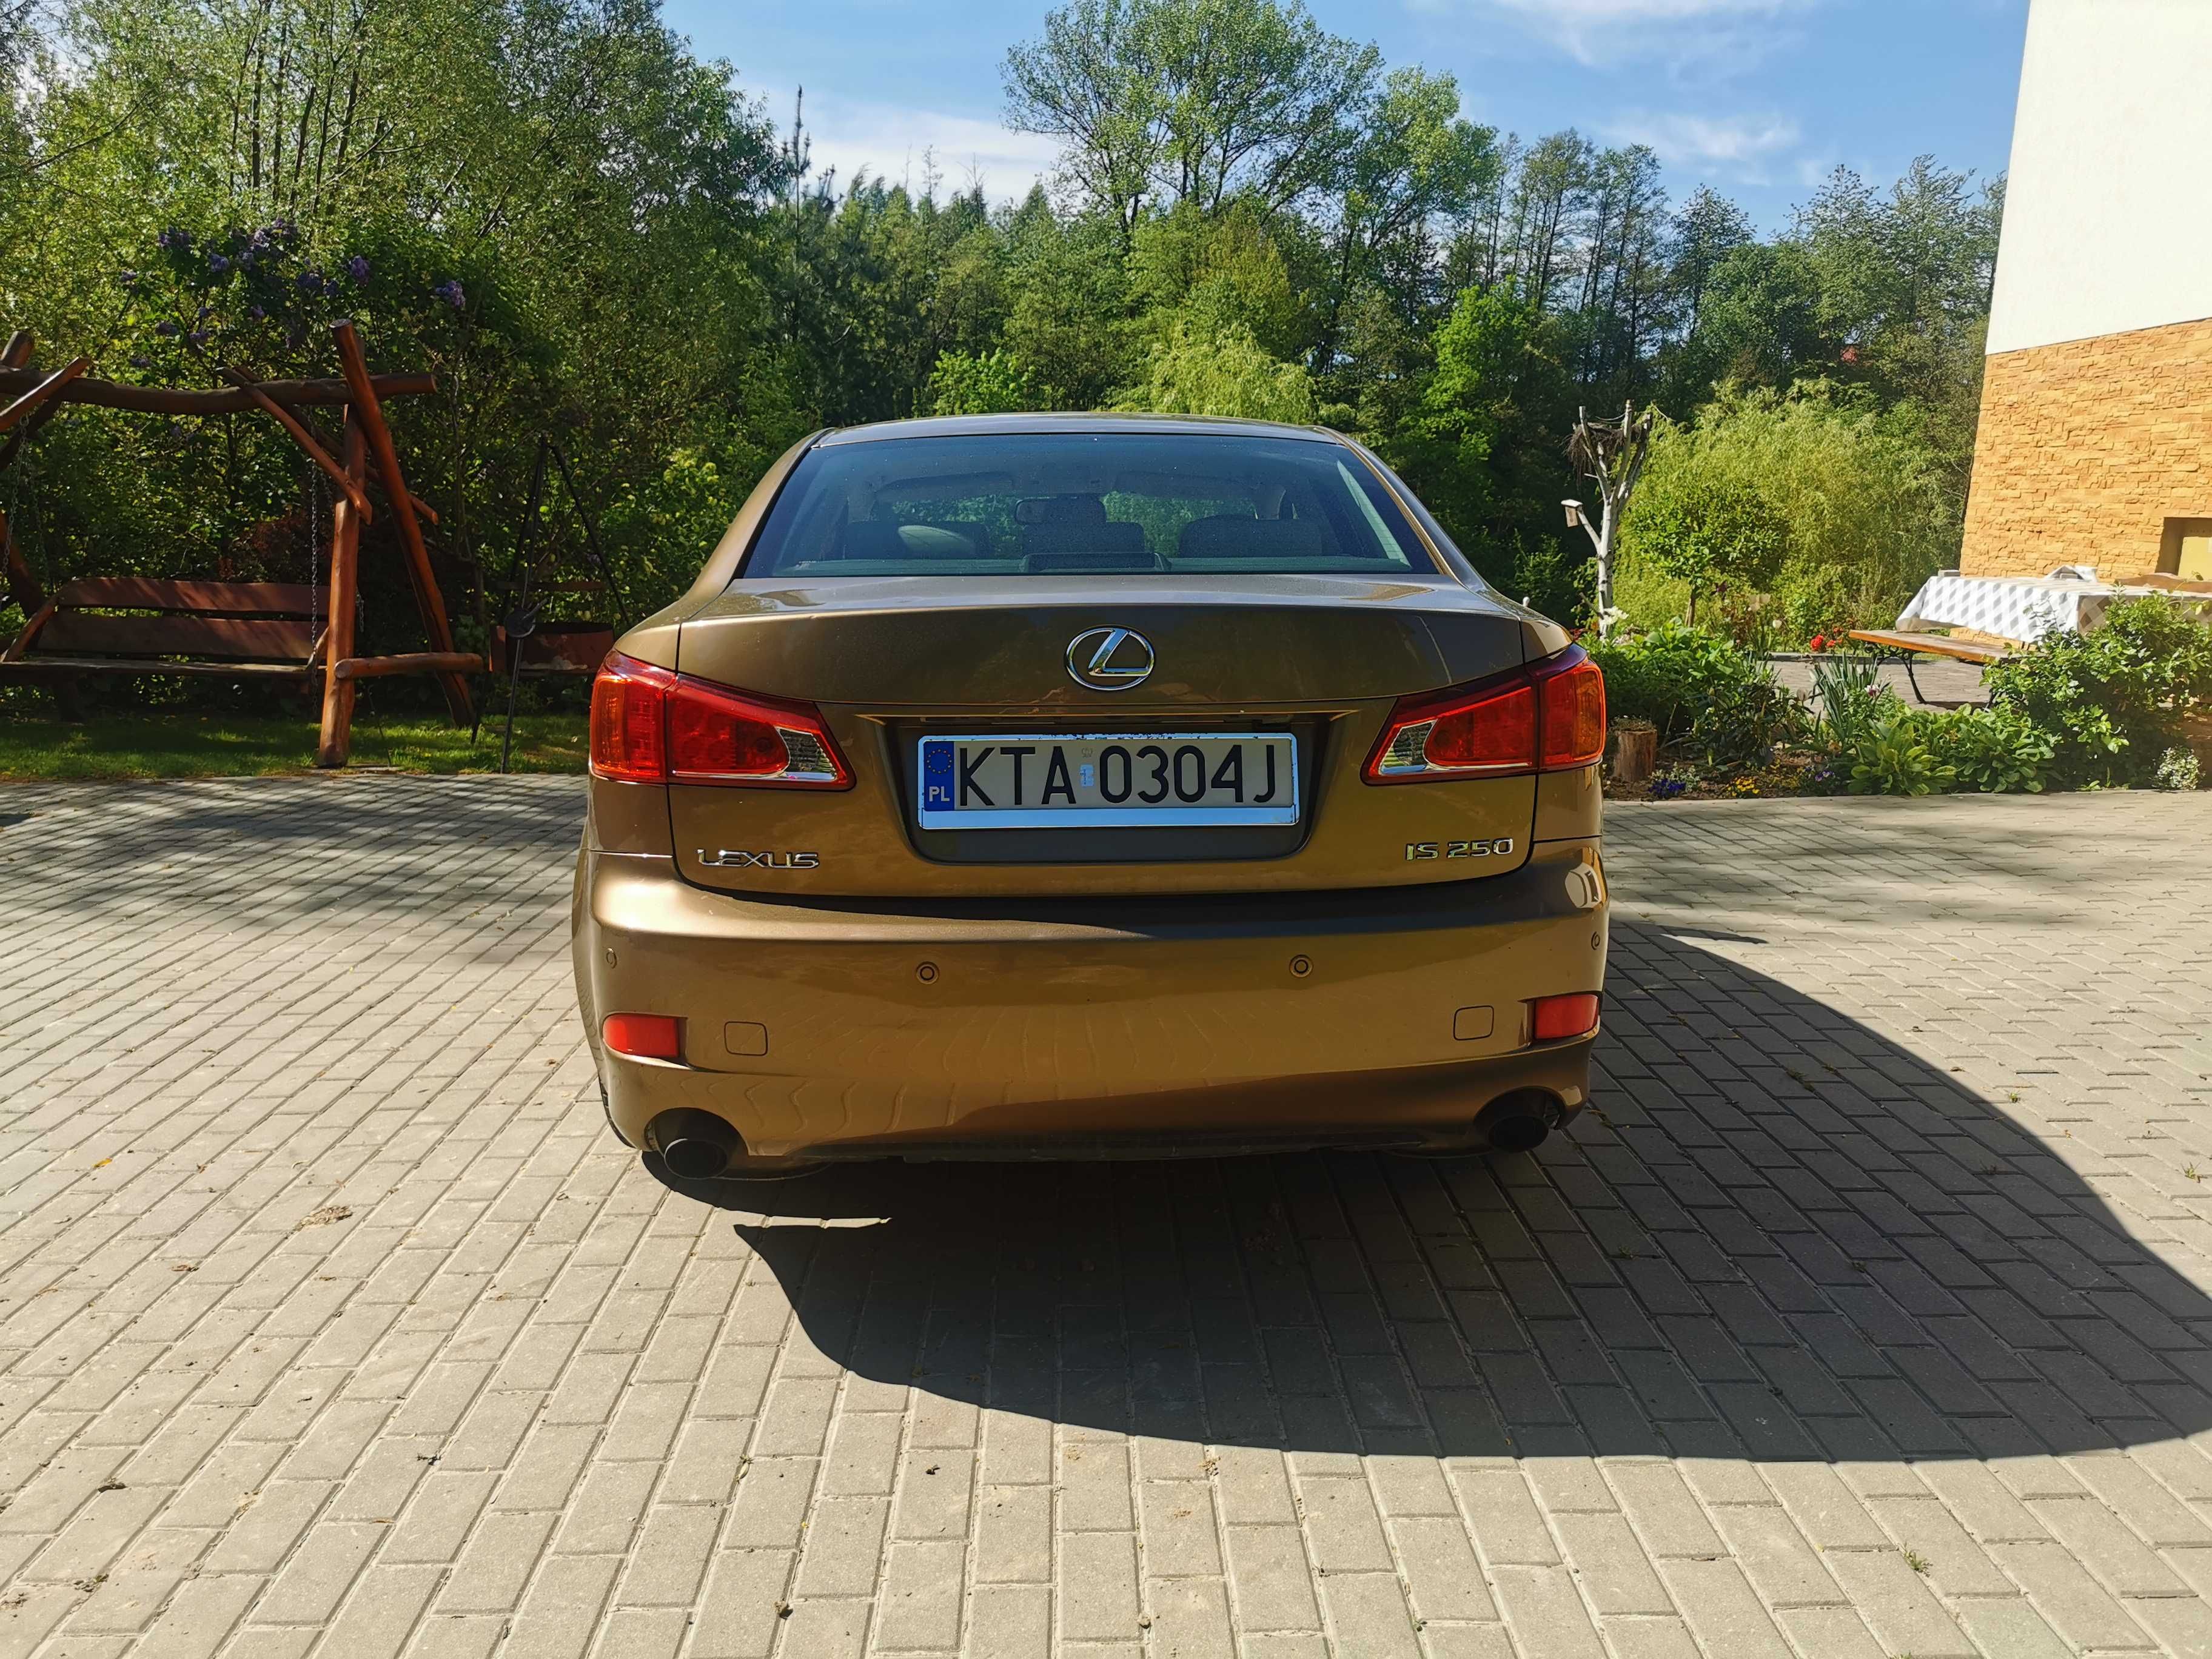 Lexus IS250, Polski salon, Złoty, serwisowany nadal w ASO, zobacz :)